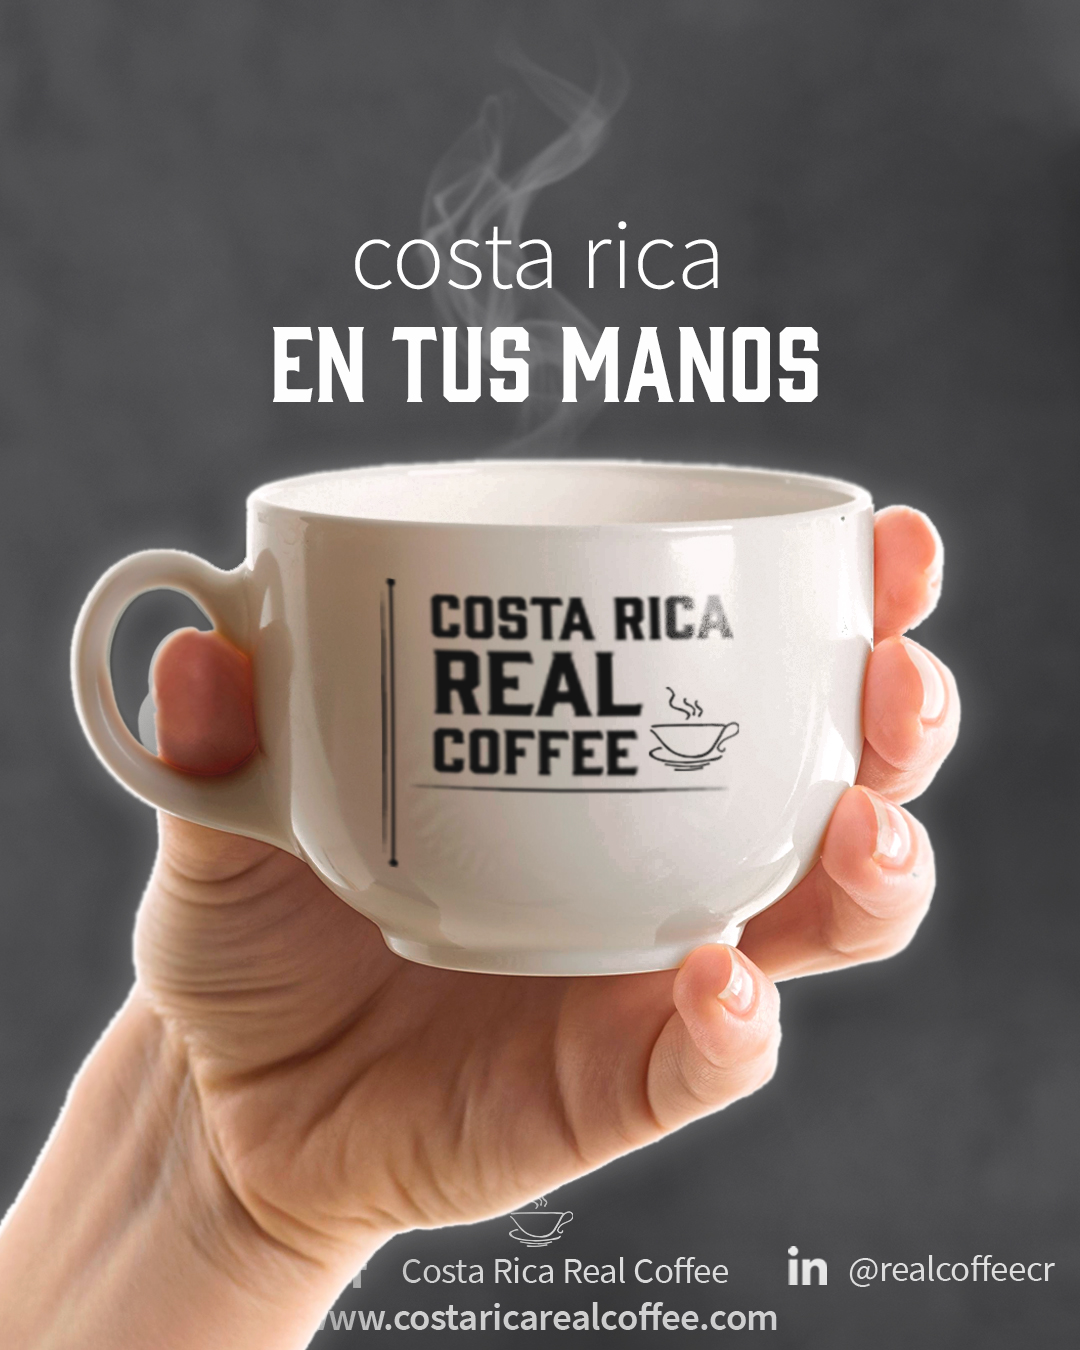 COSTA-RICA-REAL-COFFE